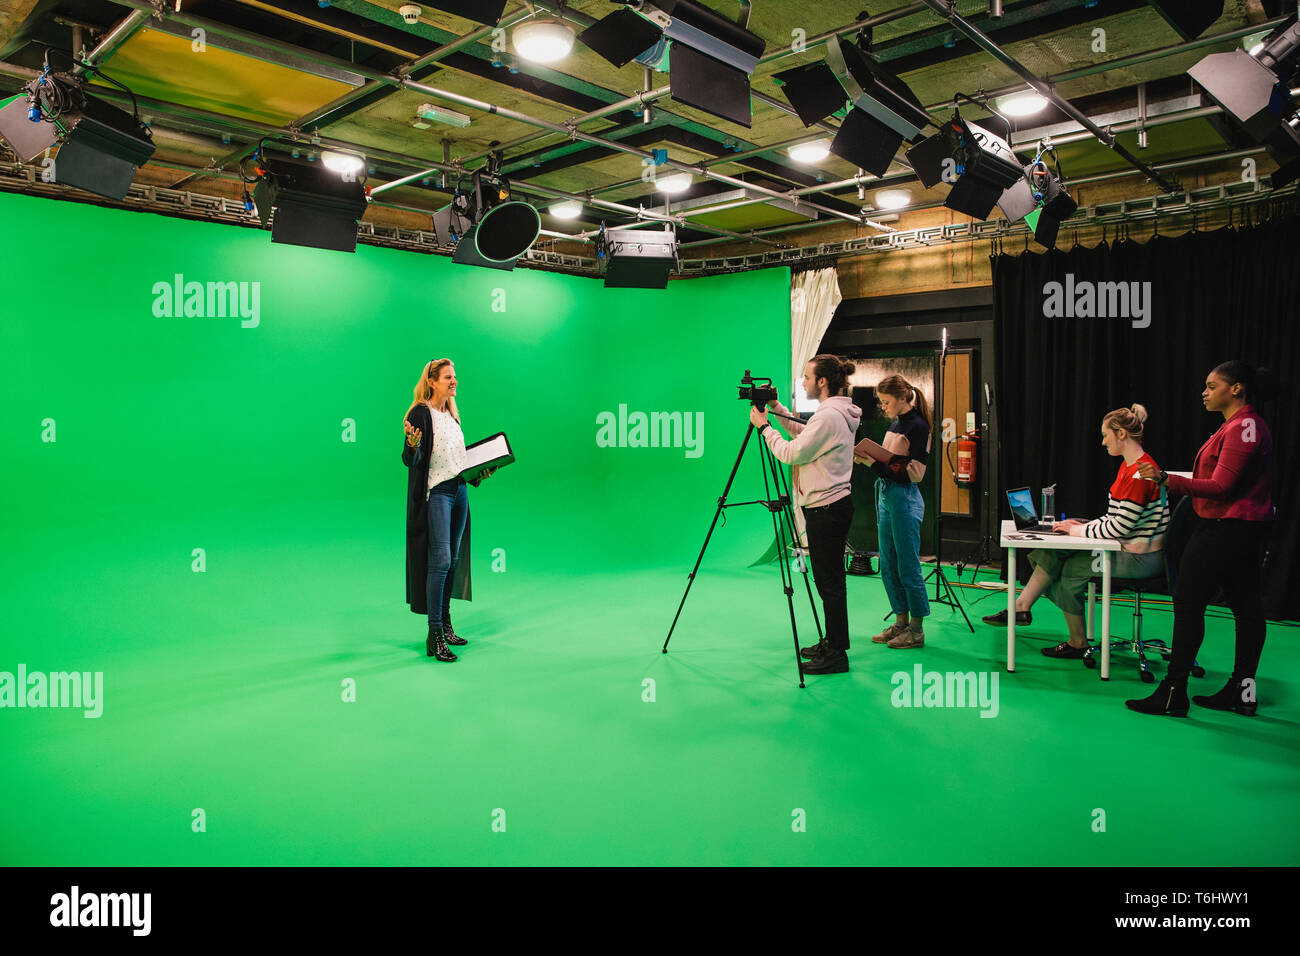 Ein Weitwinkel- aufnahme eines multi-ethnischen Gruppe von Personen, die in einem Film Studio, eine ausgereifte kaukasische Frau gesehen werden kann, die vor einem grünen scre Stockfoto